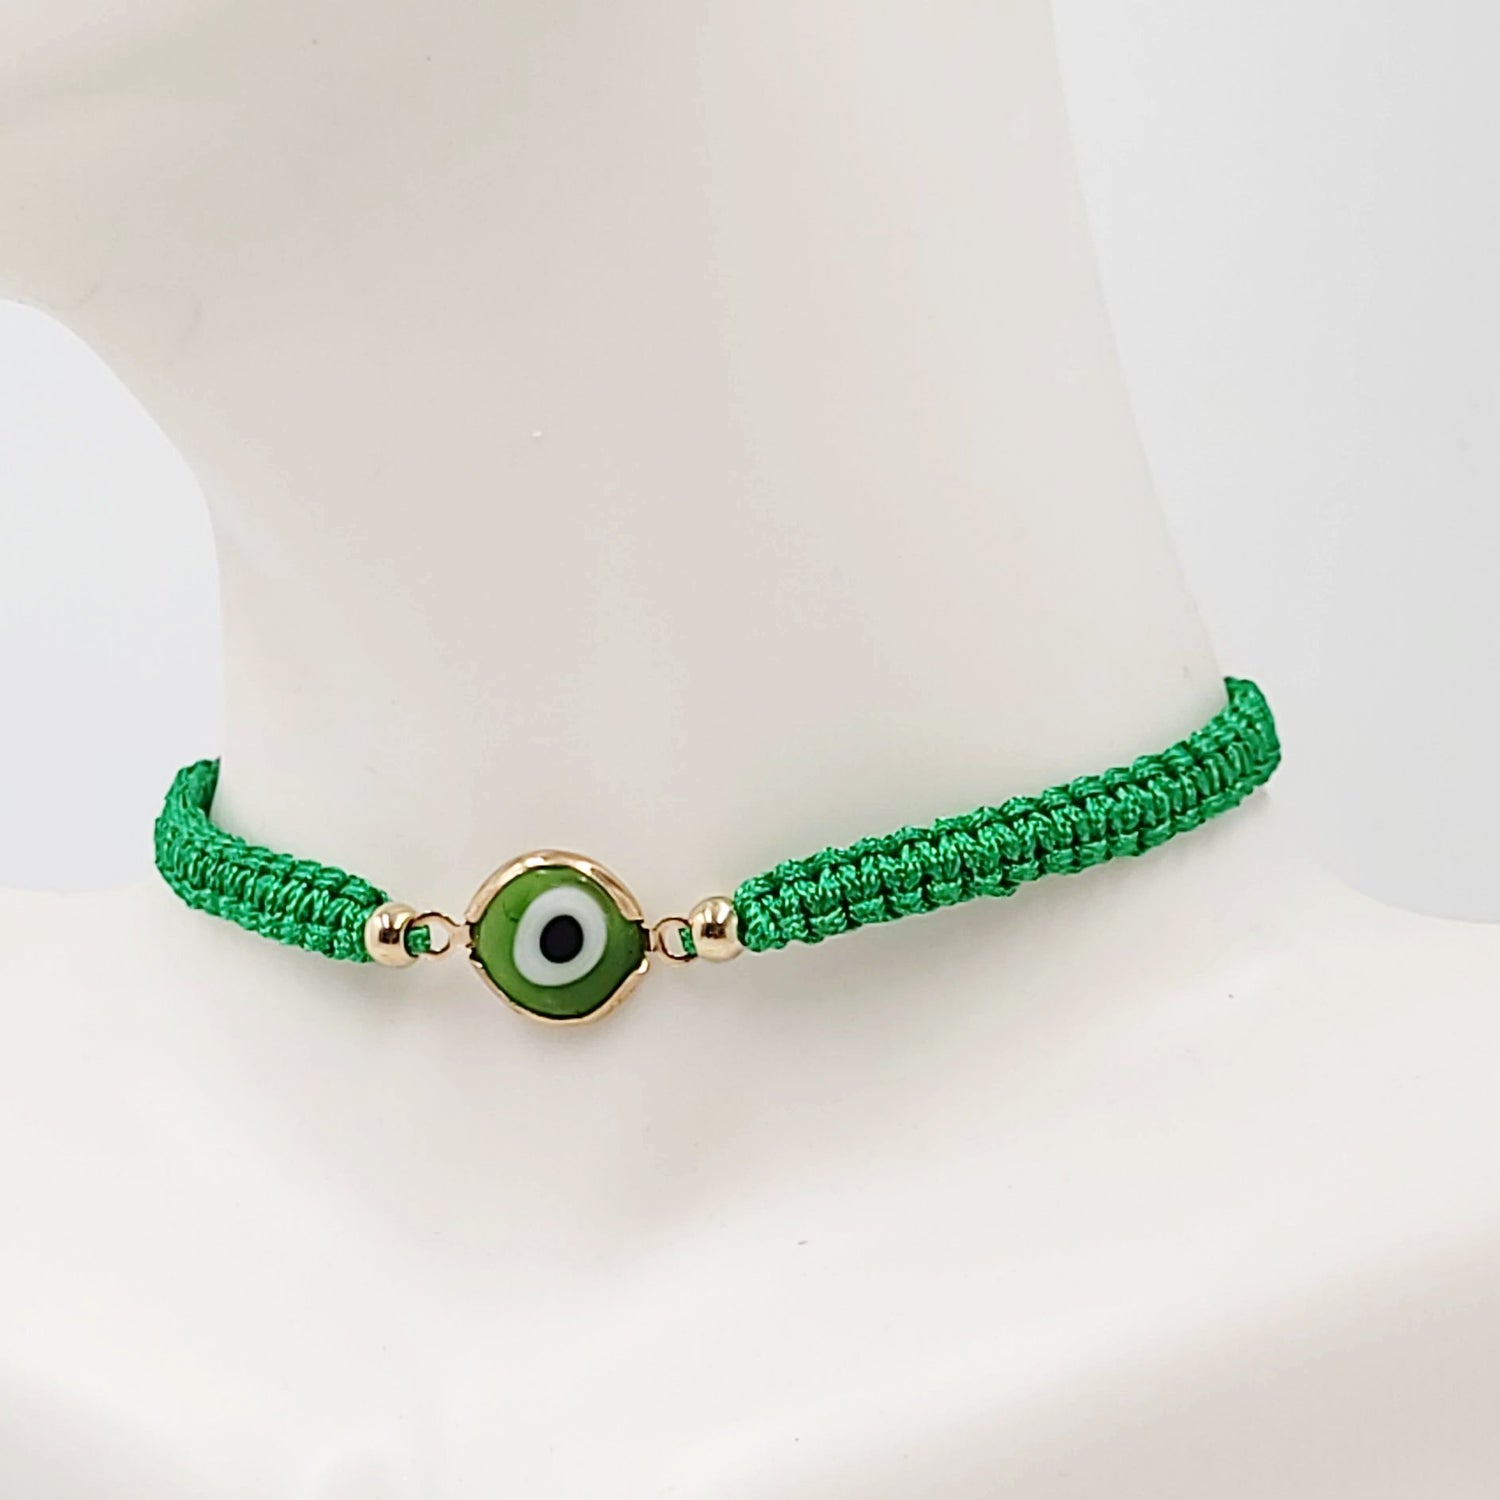 Green Evil Eye Bracelet Green String Bracelet - Elevated Metaphysical